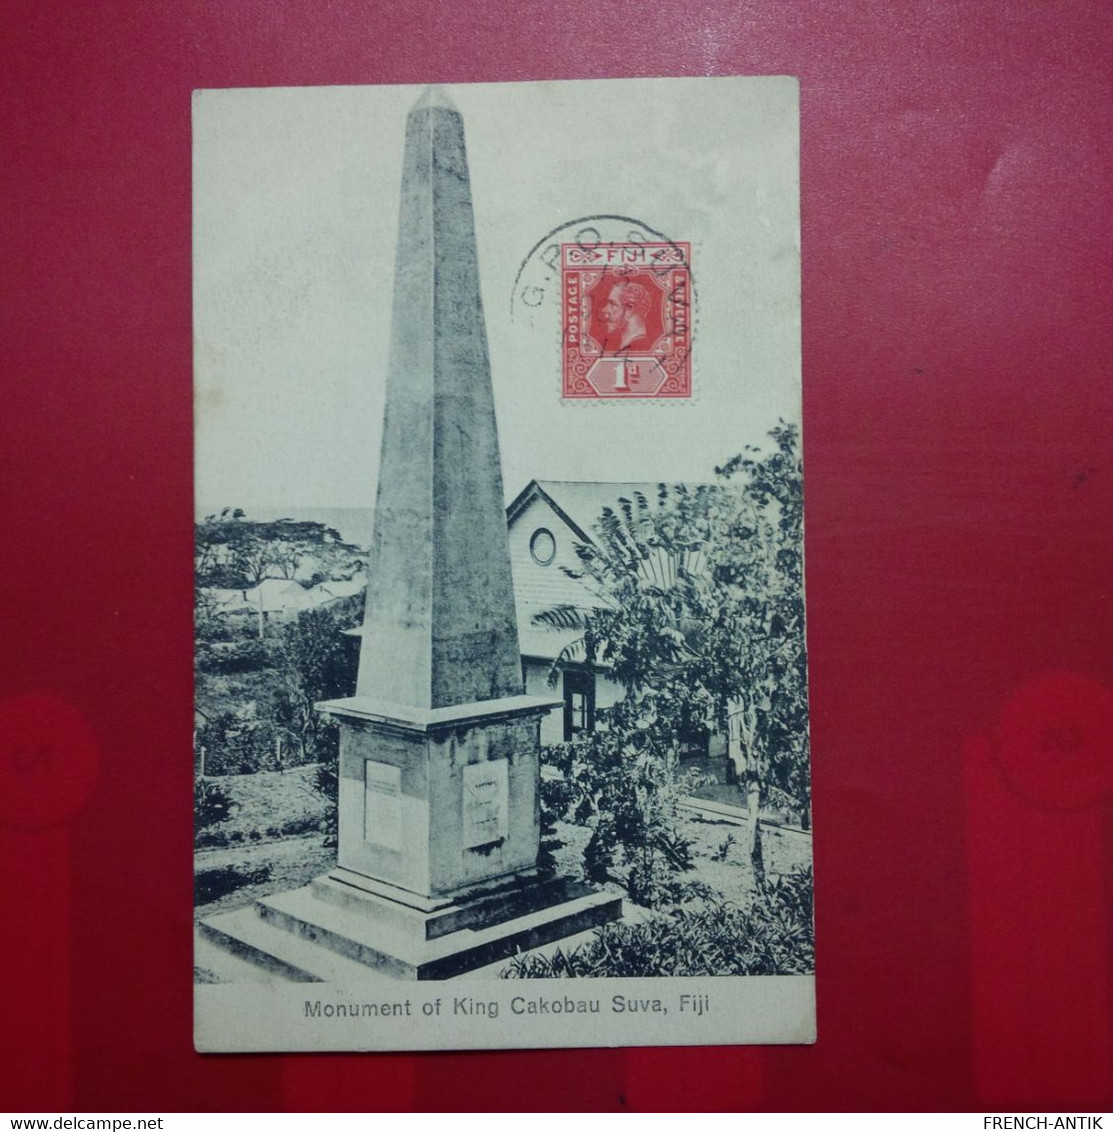 FIDJI FIJI MONUMENT OF KING CAKOBAU SUVA - Fidschi